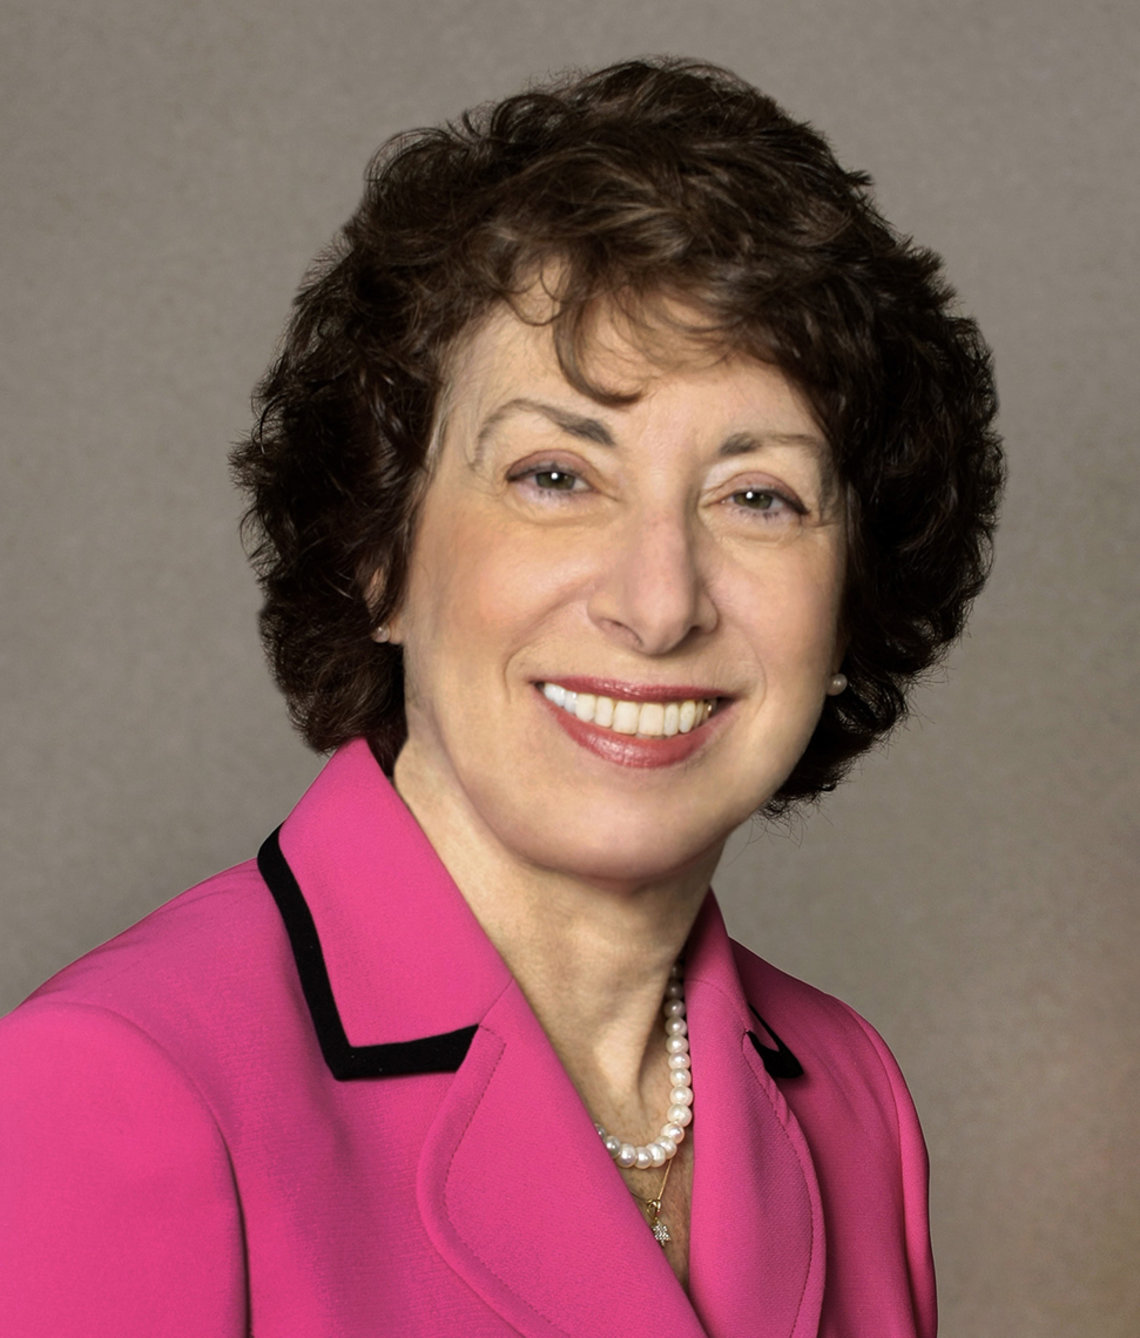 Dr. Linda S. Birnbaum